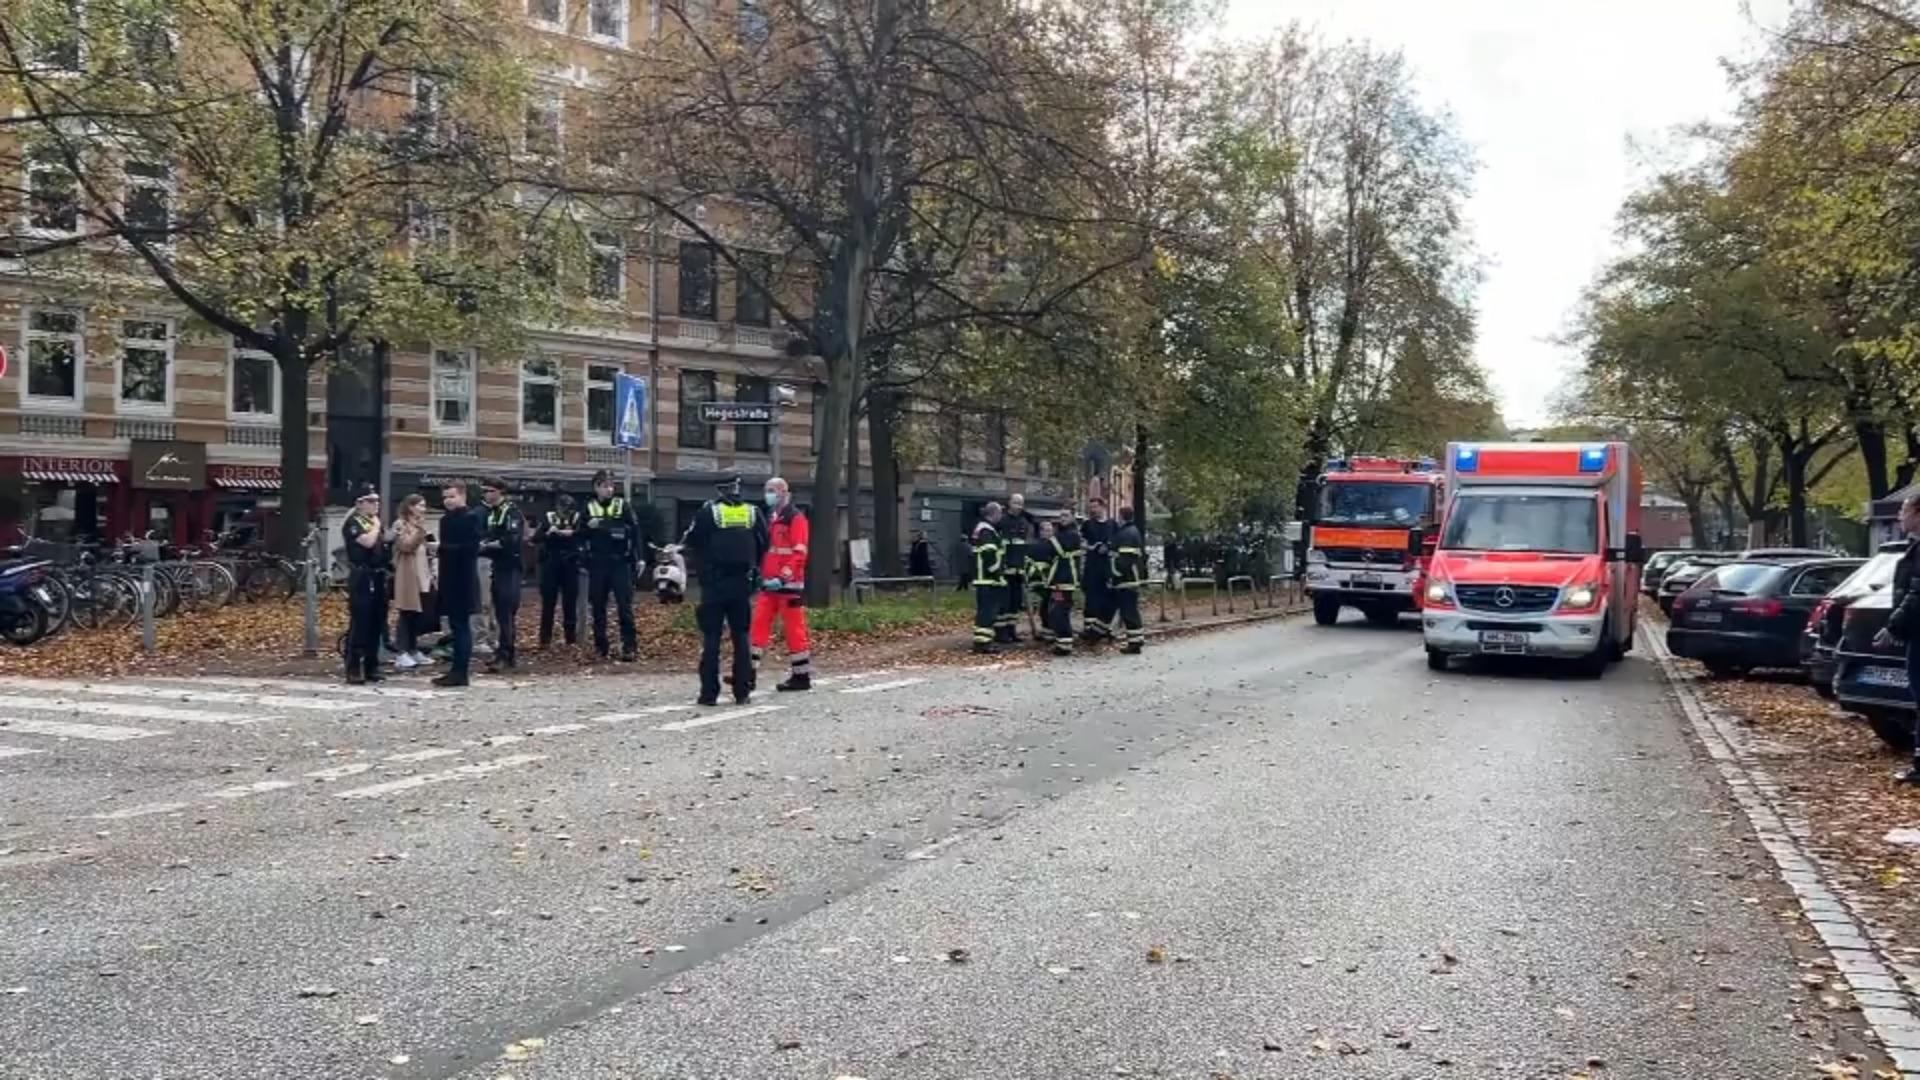 LKW-Fahrer flüchtet ohne zu helfen Frau in Hamburg überfahren